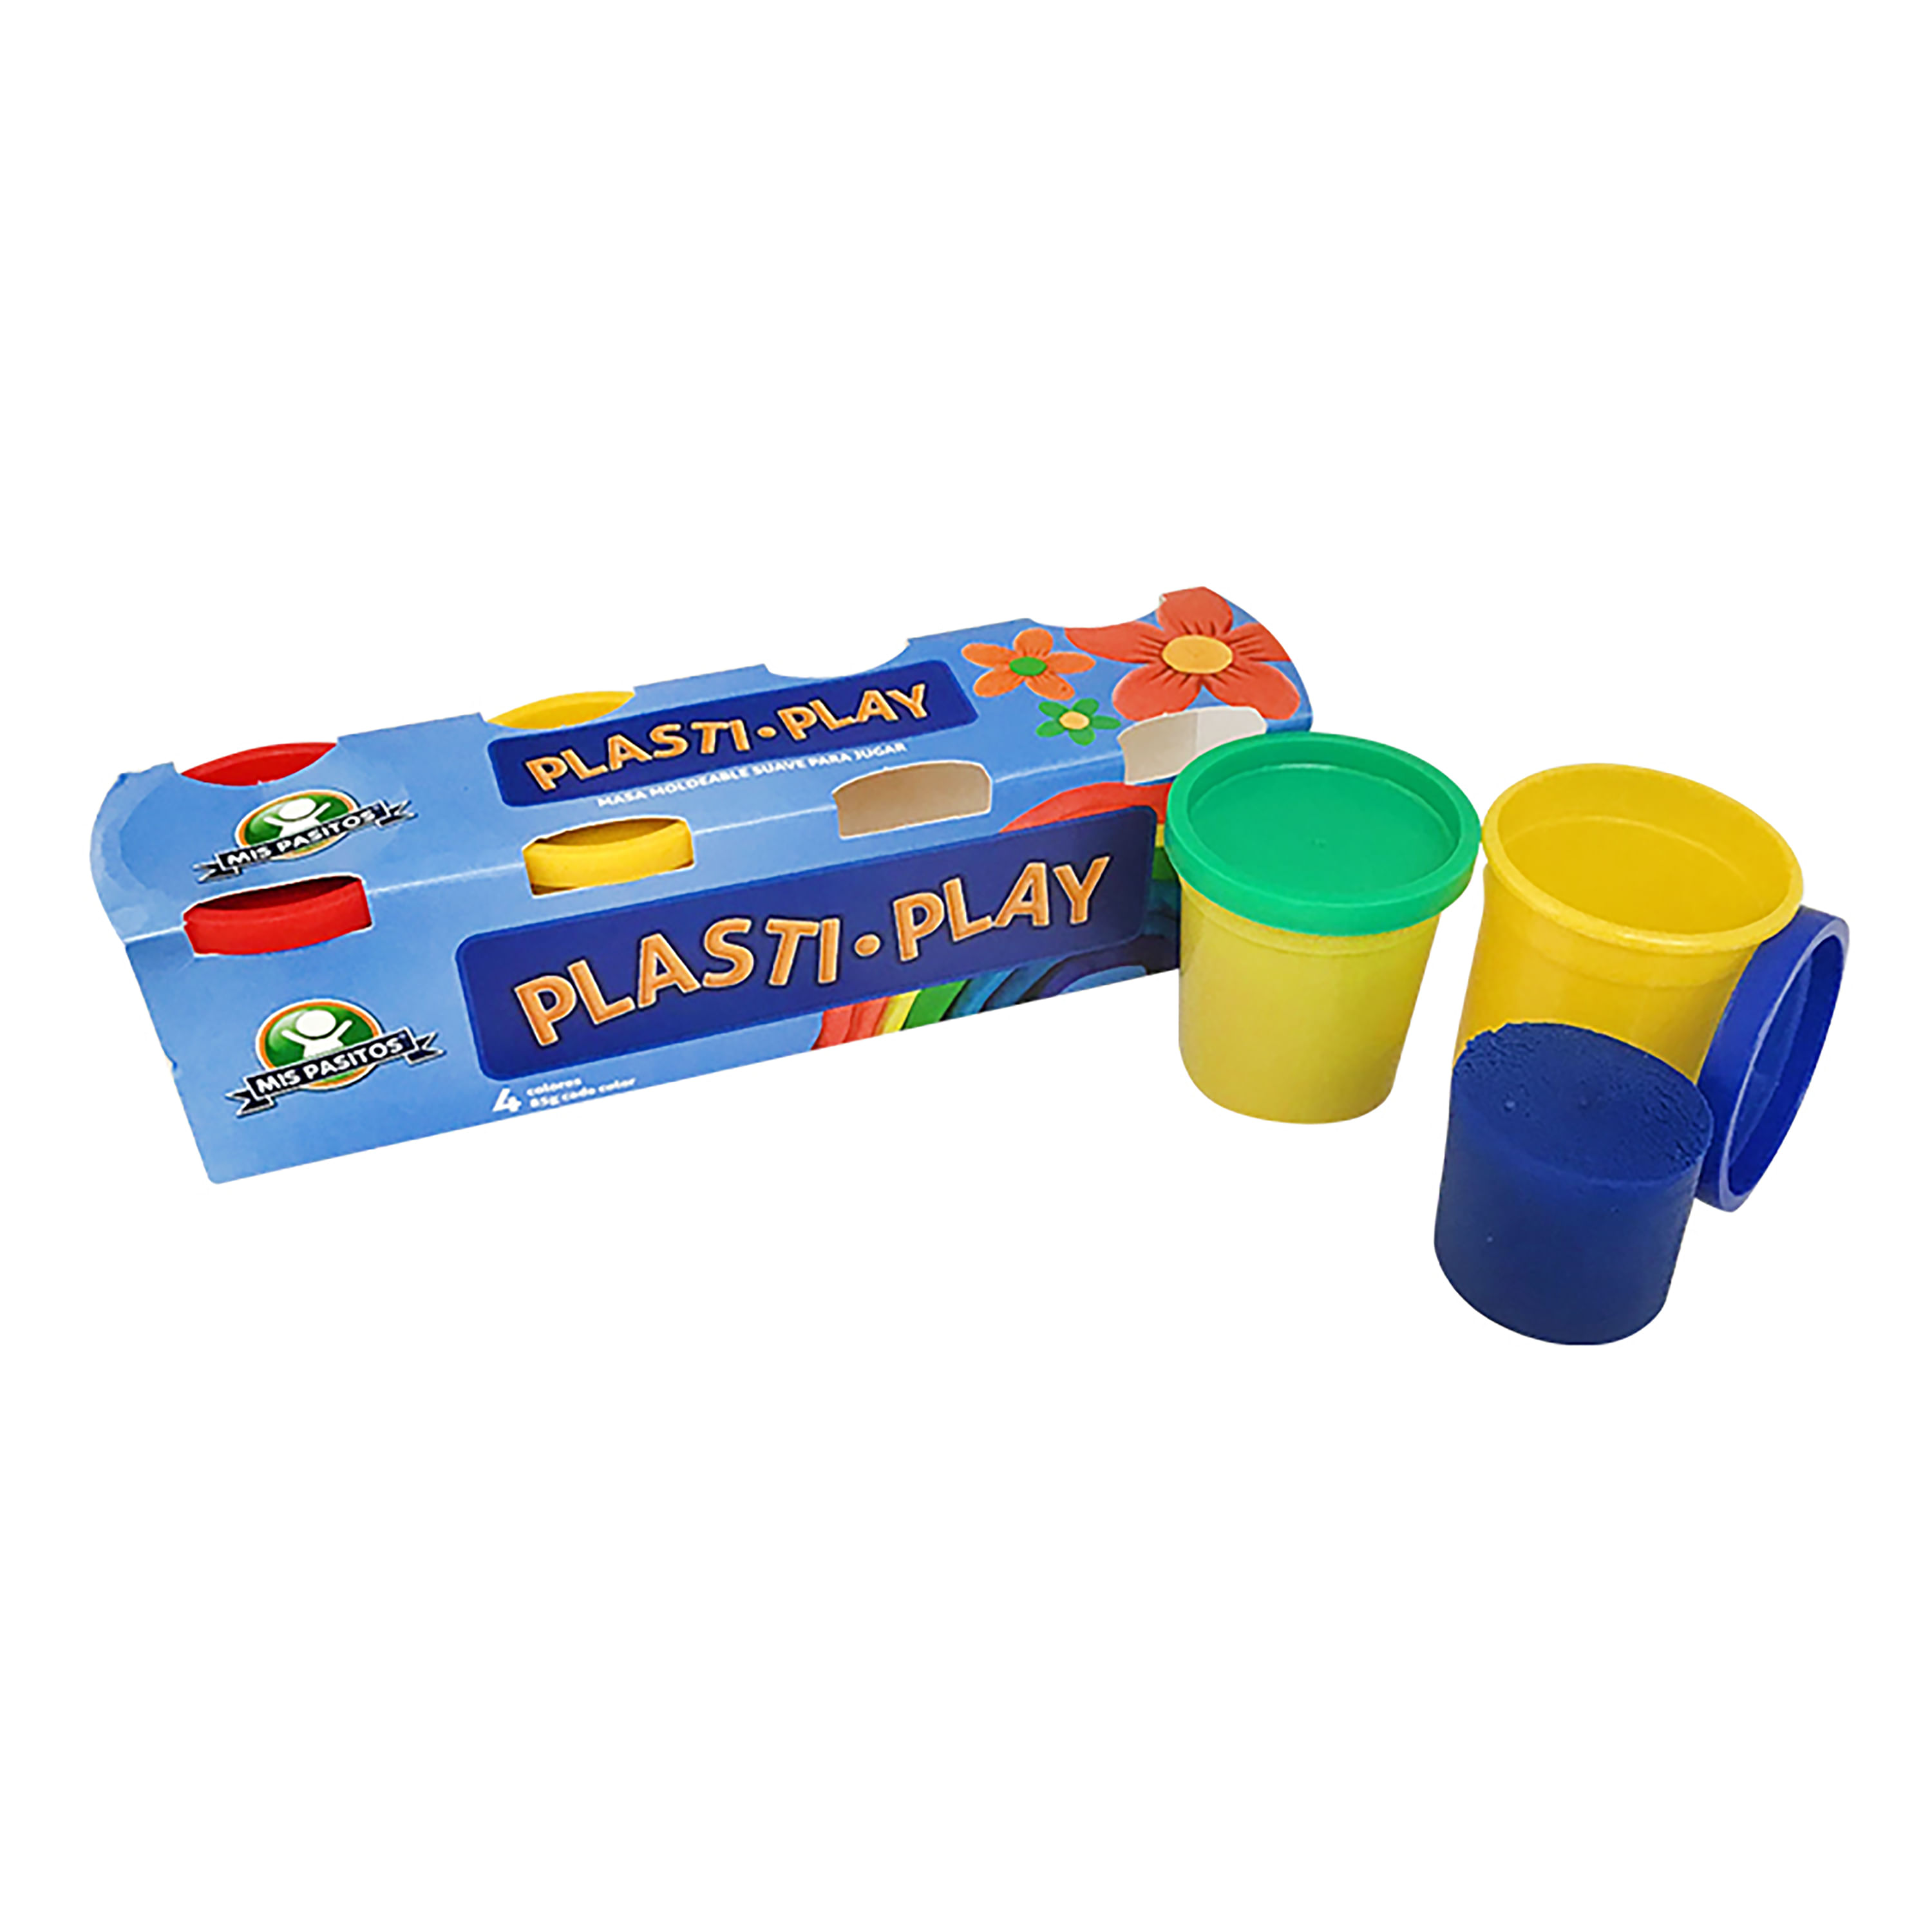 Plasti-Play-Mis-Pasitos-1-28769